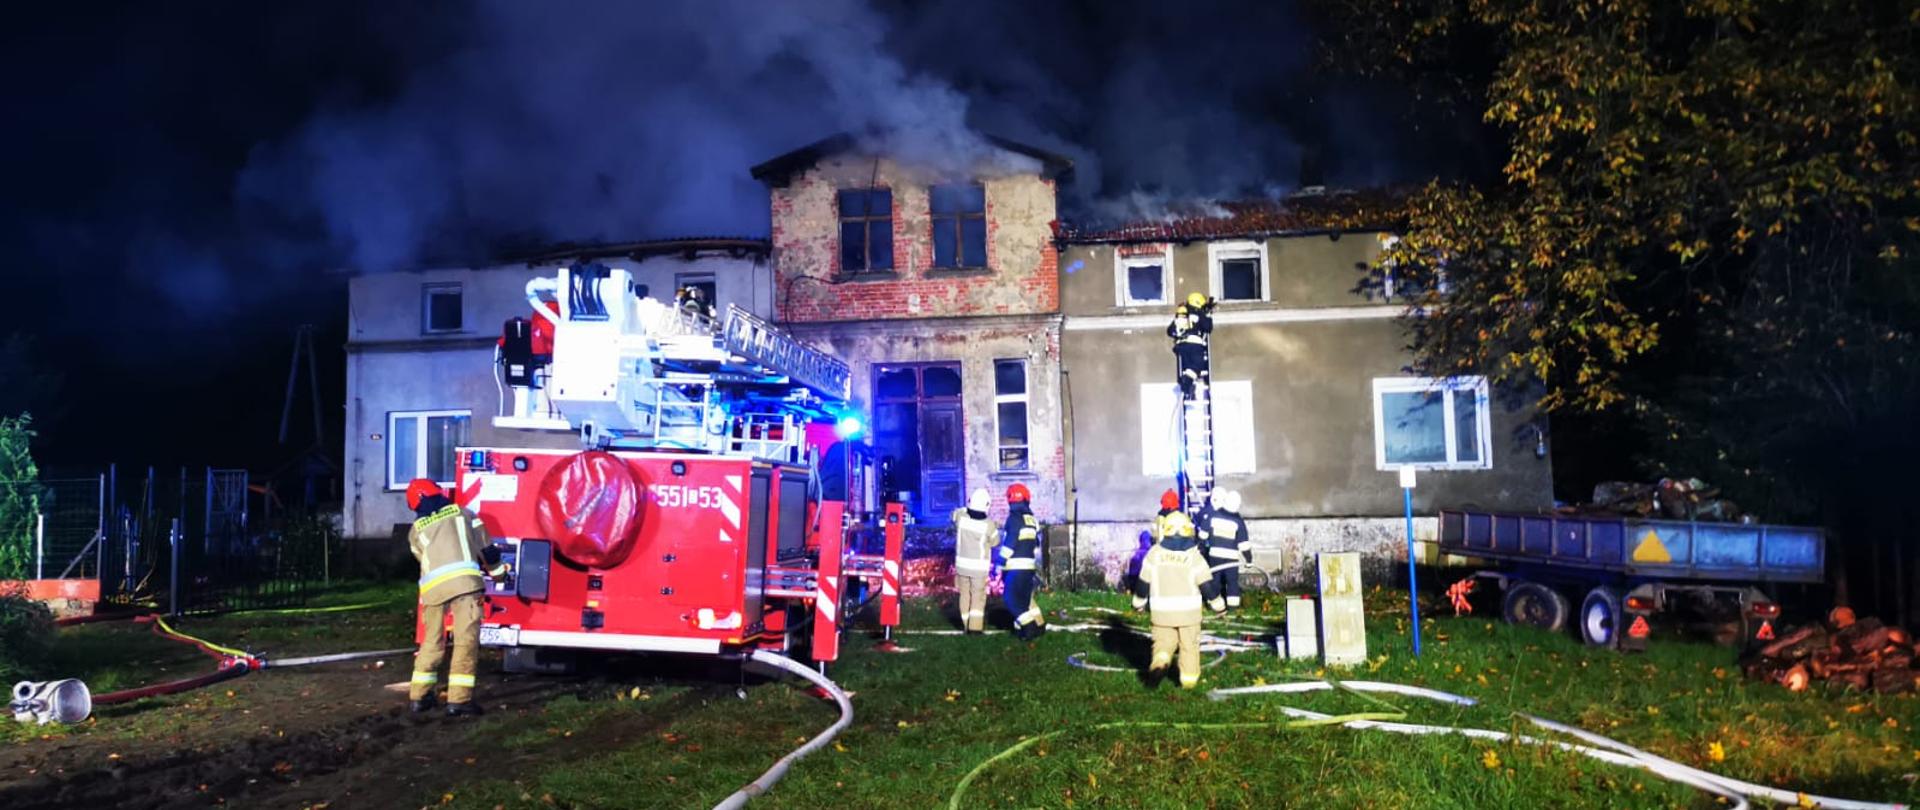 Zdjęcie przedstawia Pożar budynku wielorodzinnego w miejscowości Trzciana, strażacy gaszą go przy pomocy podnośnika.